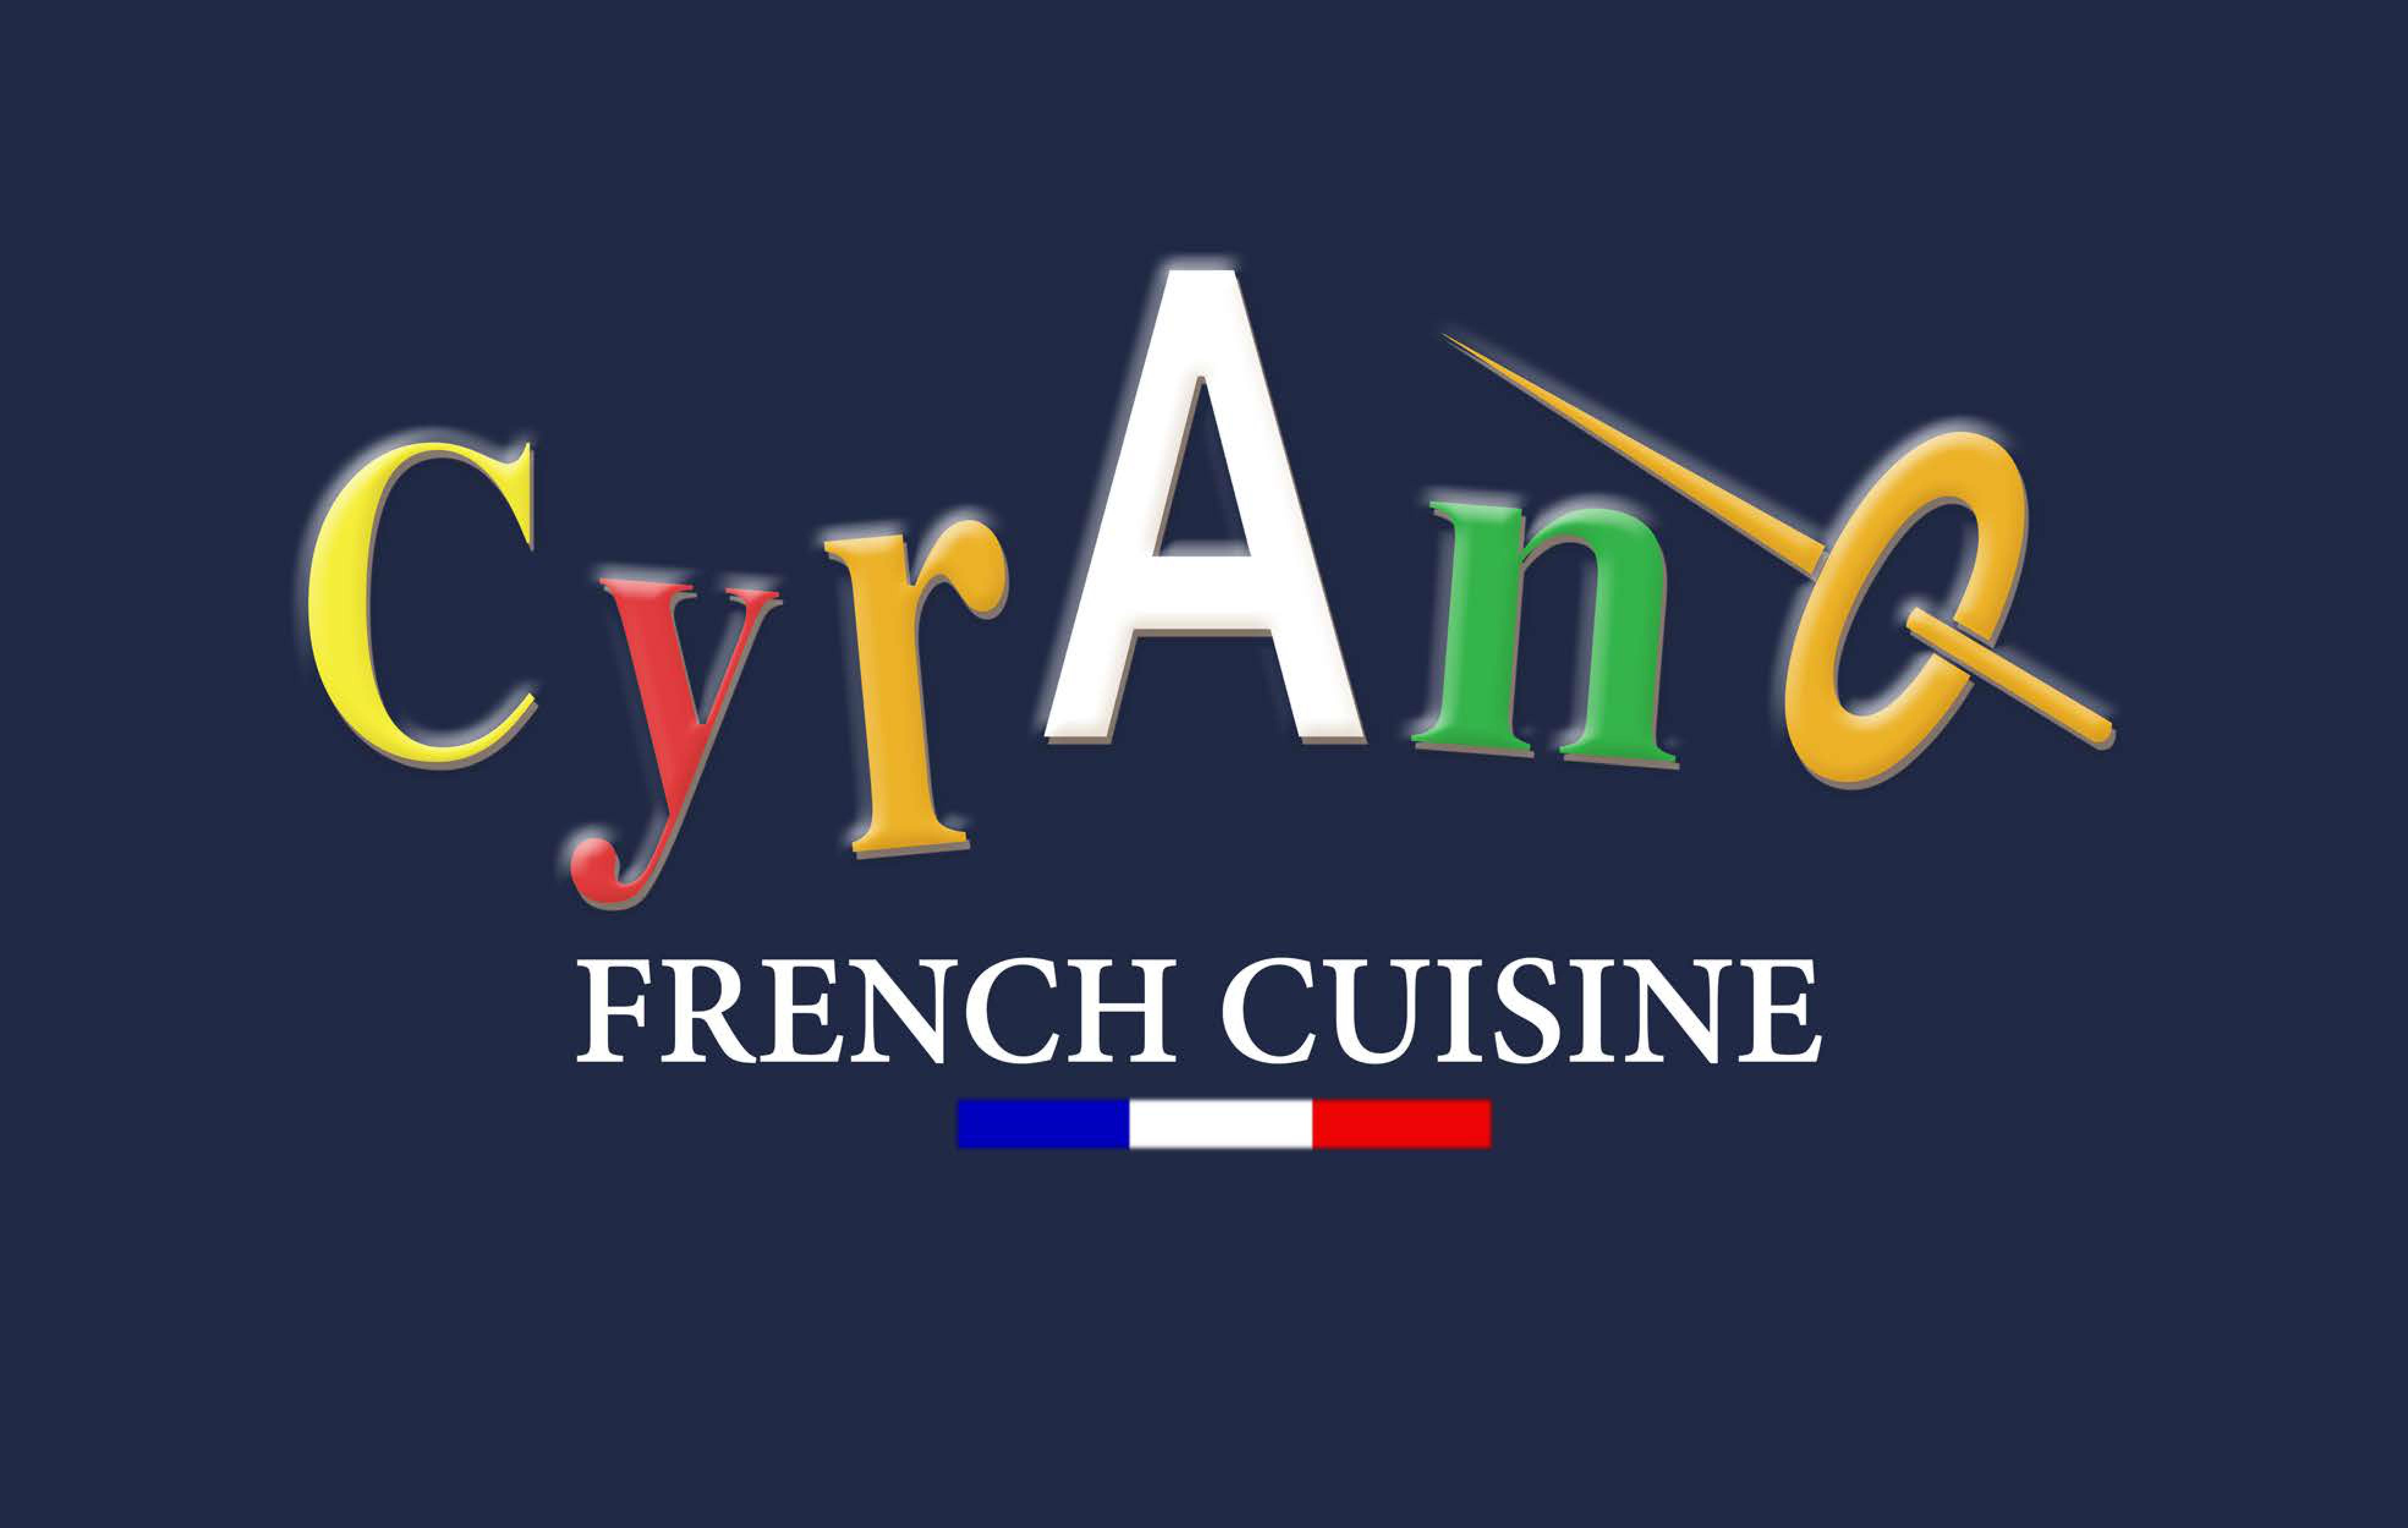 Cyrano Borås logo